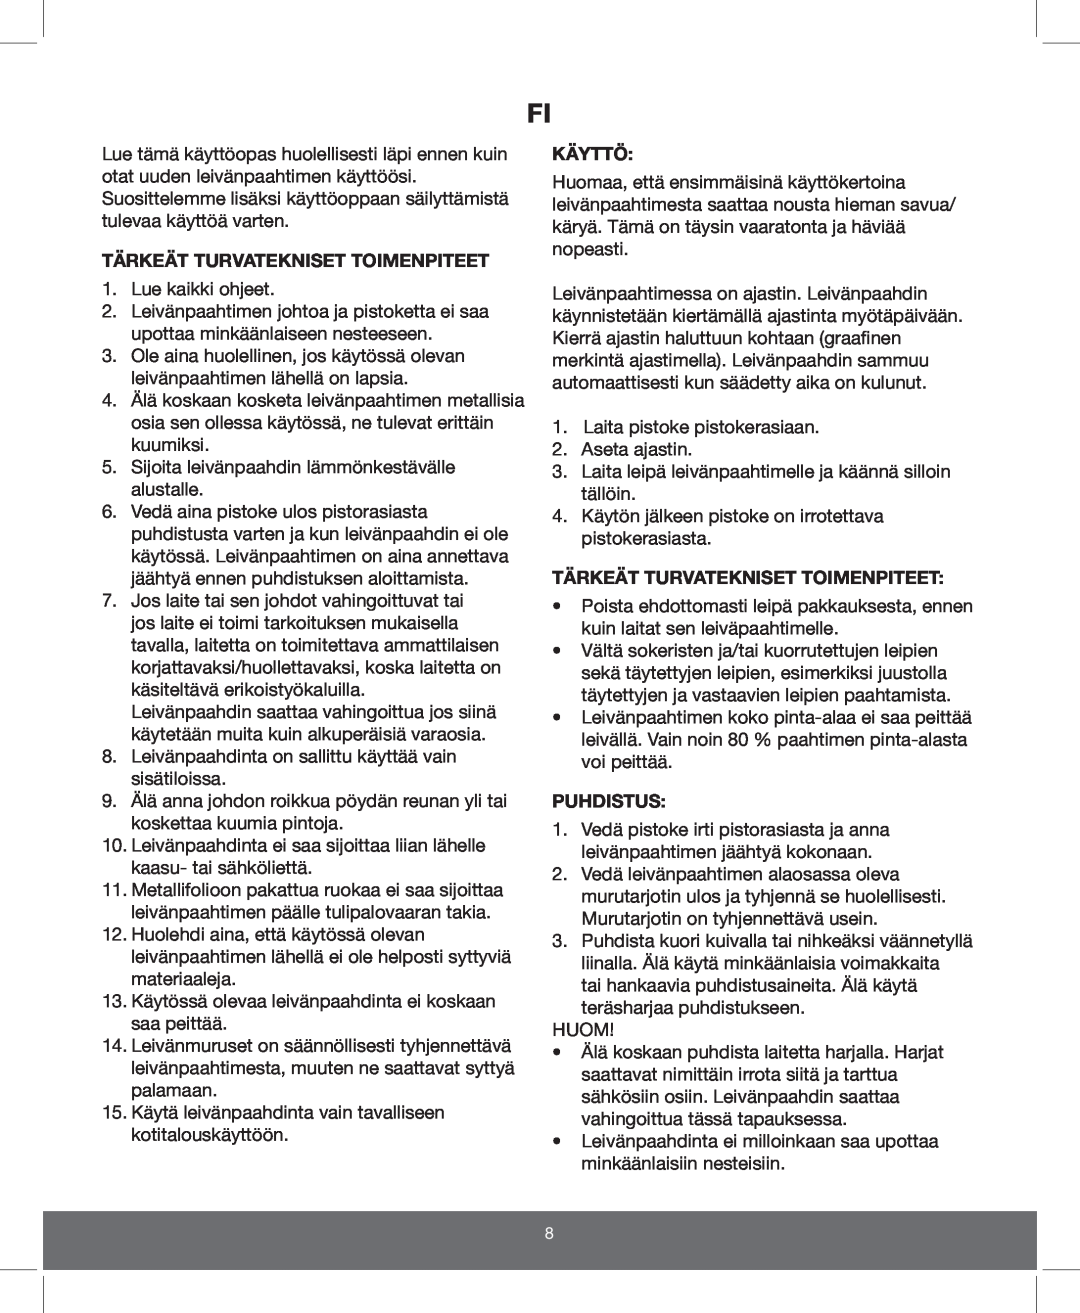 Melissa 643-202 manual Tärkeät Turvatekniset Toimenpiteet, Käyttö, Puhdistus 